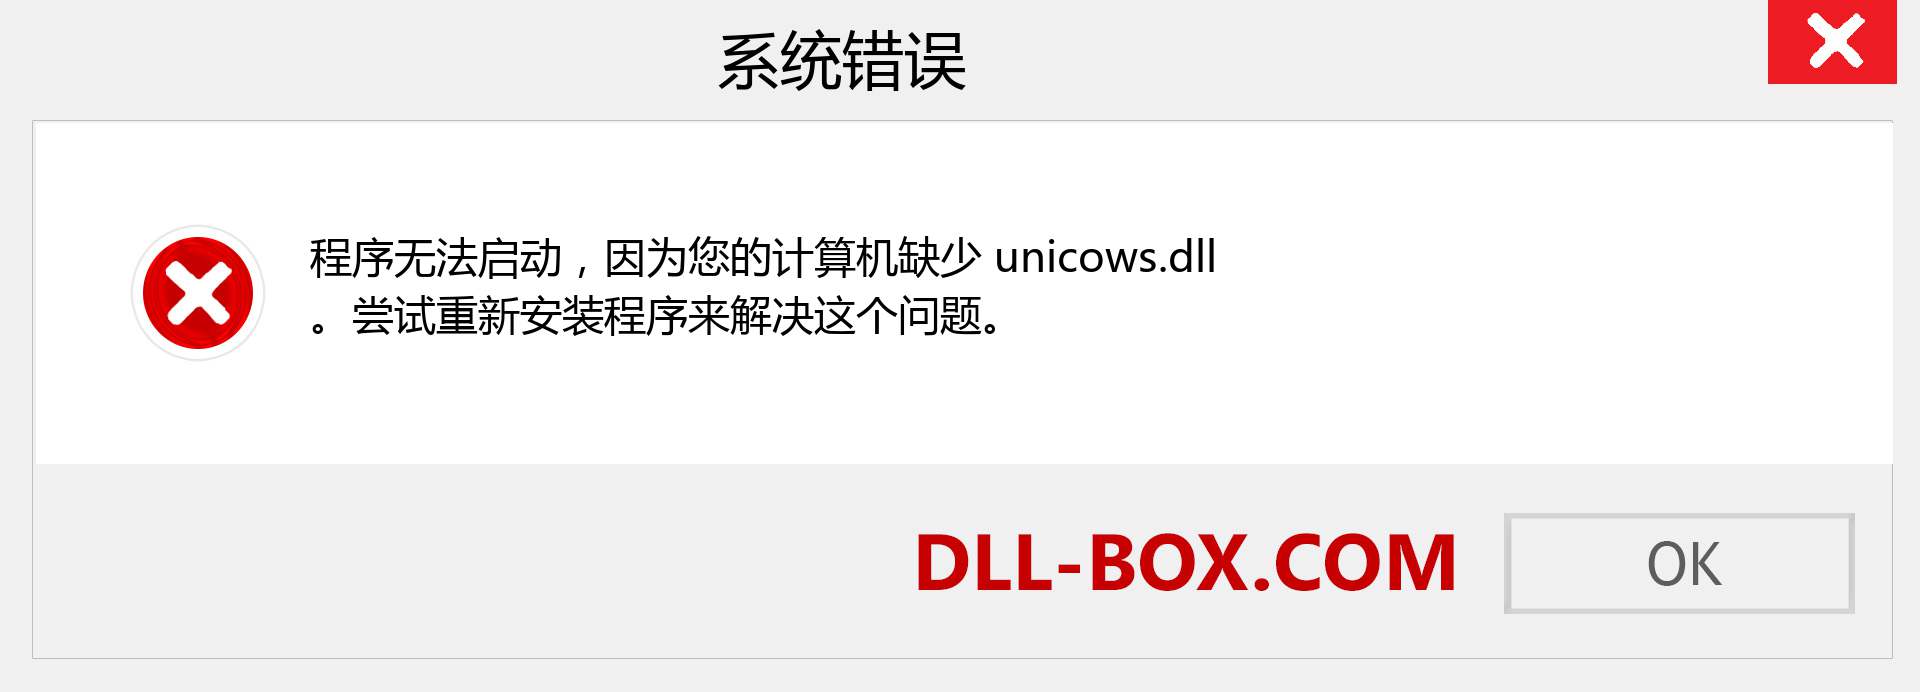 unicows.dll 文件丢失？。 适用于 Windows 7、8、10 的下载 - 修复 Windows、照片、图像上的 unicows dll 丢失错误